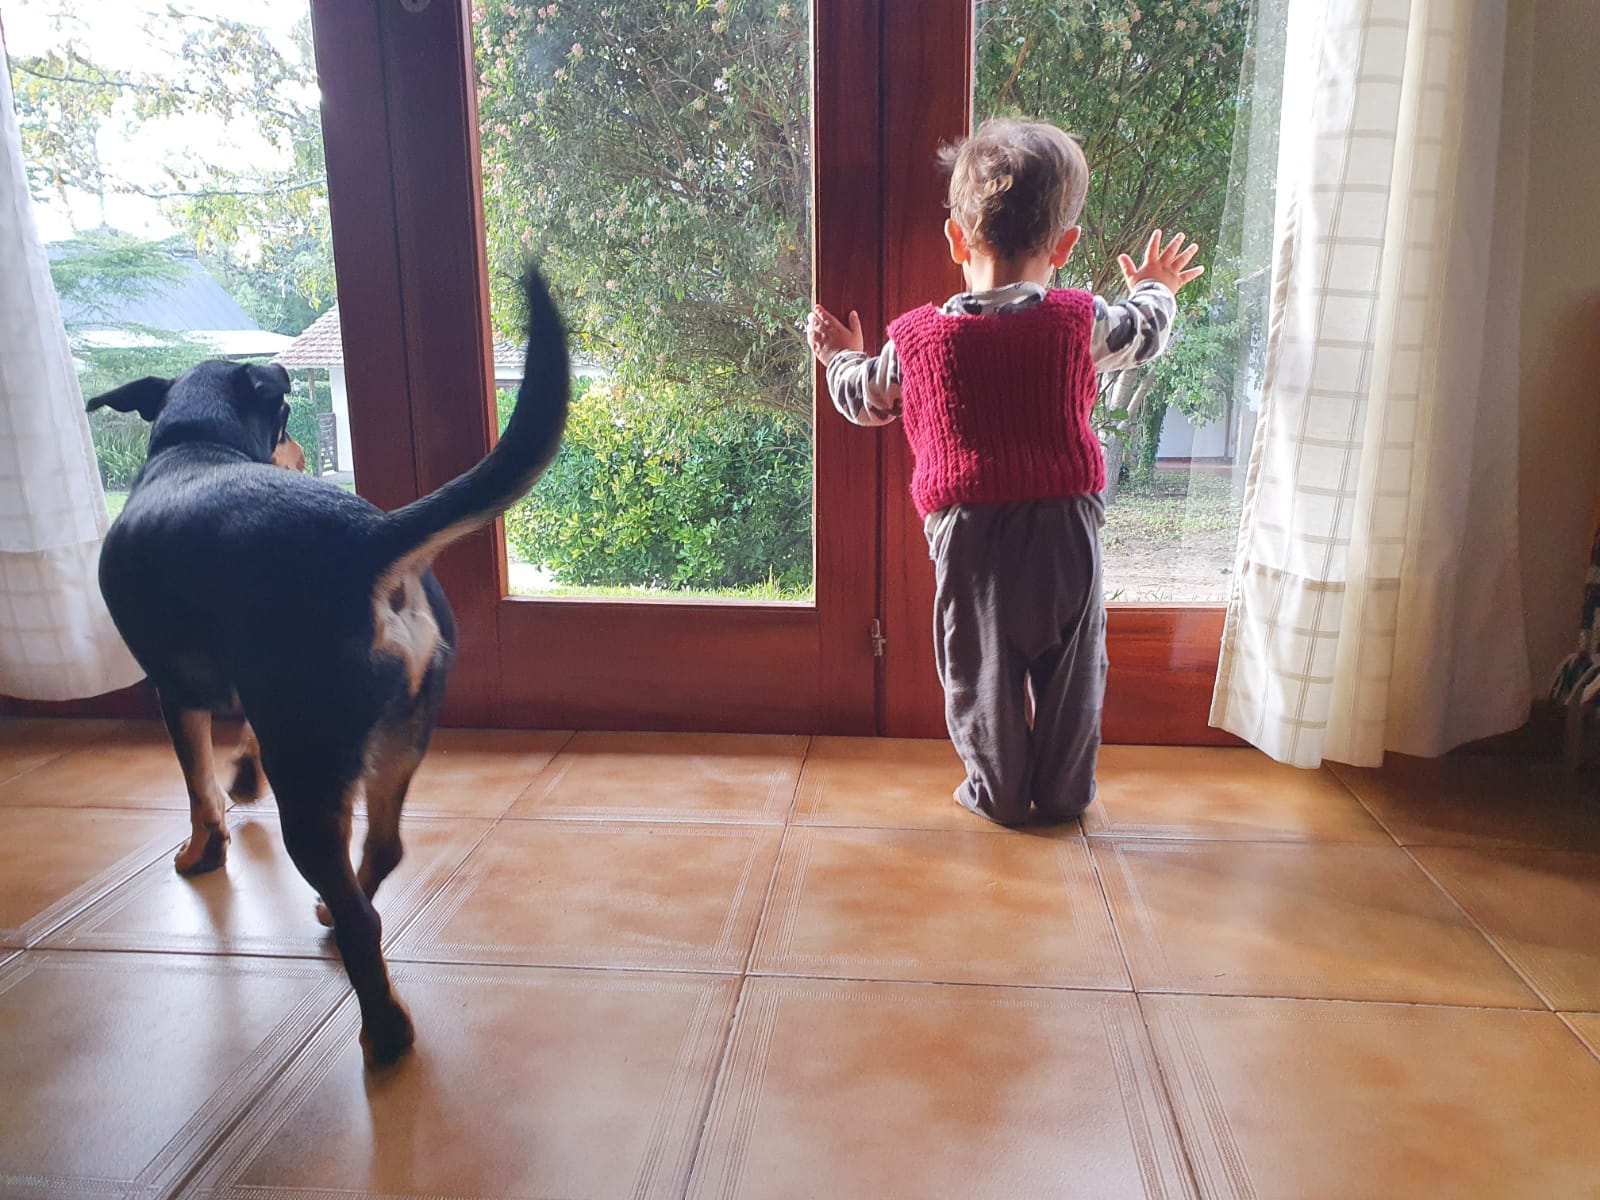 Un perro y un niño miran por la ventana en una casa de Villa Gesell. CELINA CAPPELLO